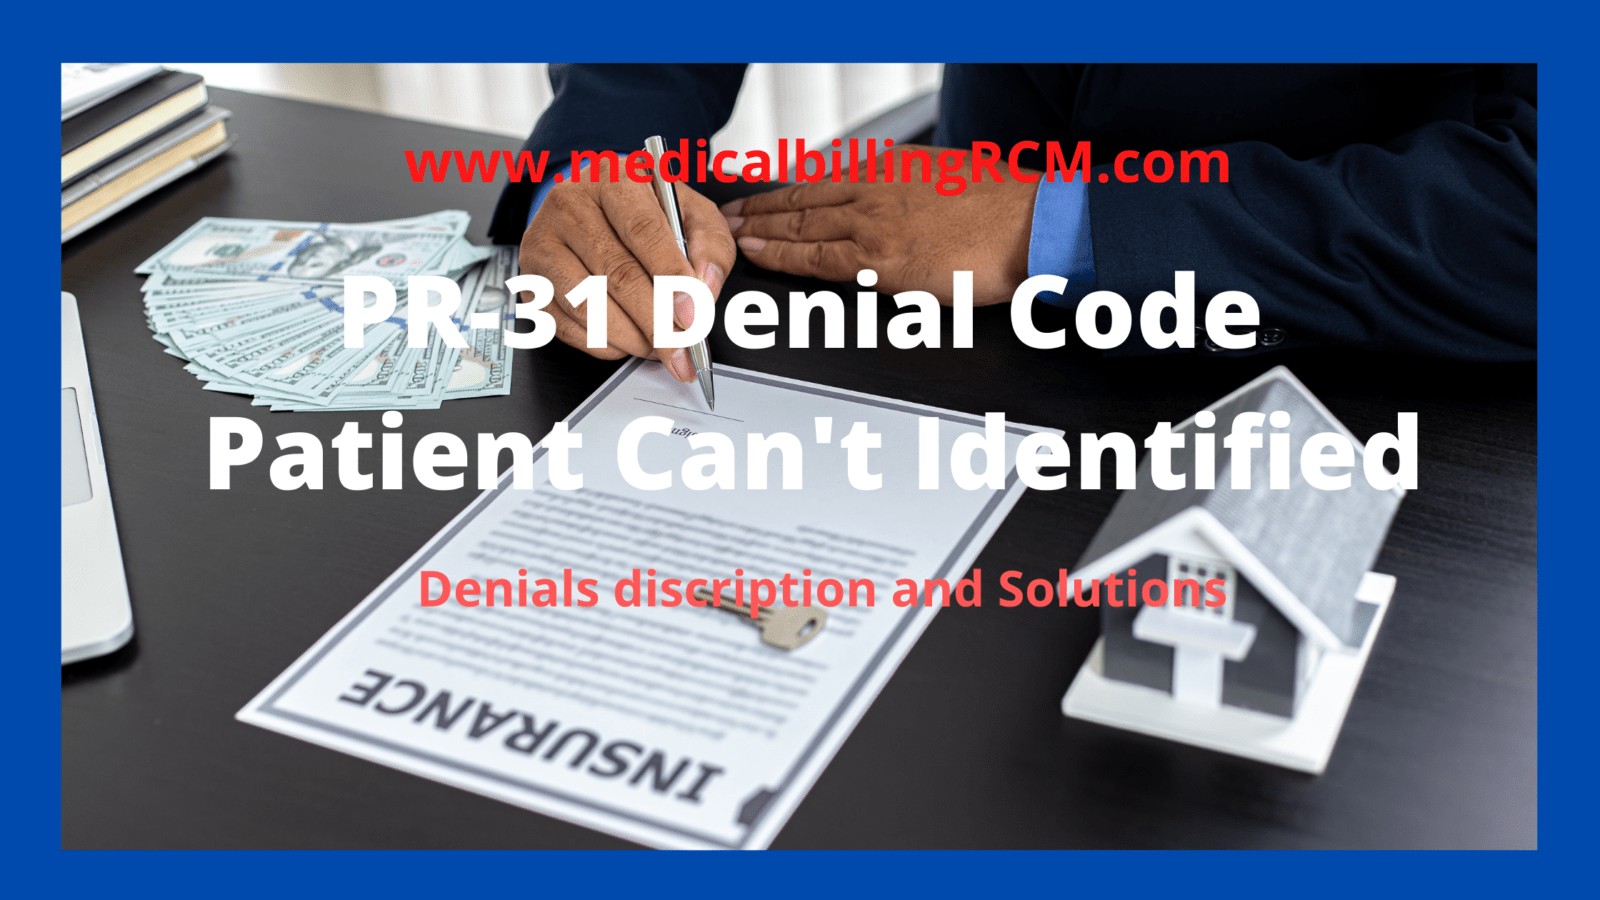 PR 31 denial code explanation